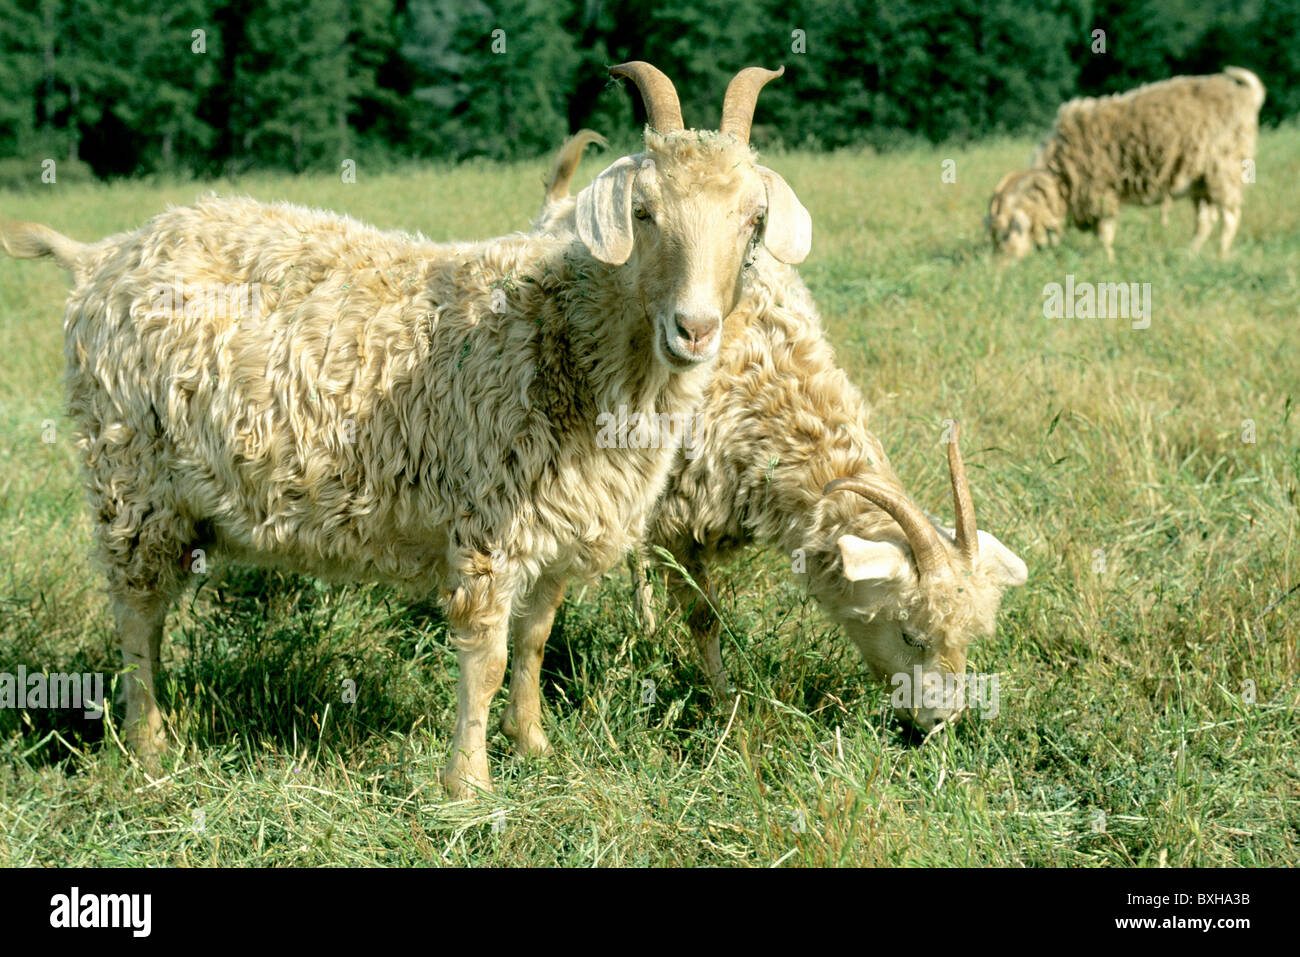 Angora Goats grazing, field, Stock Photo